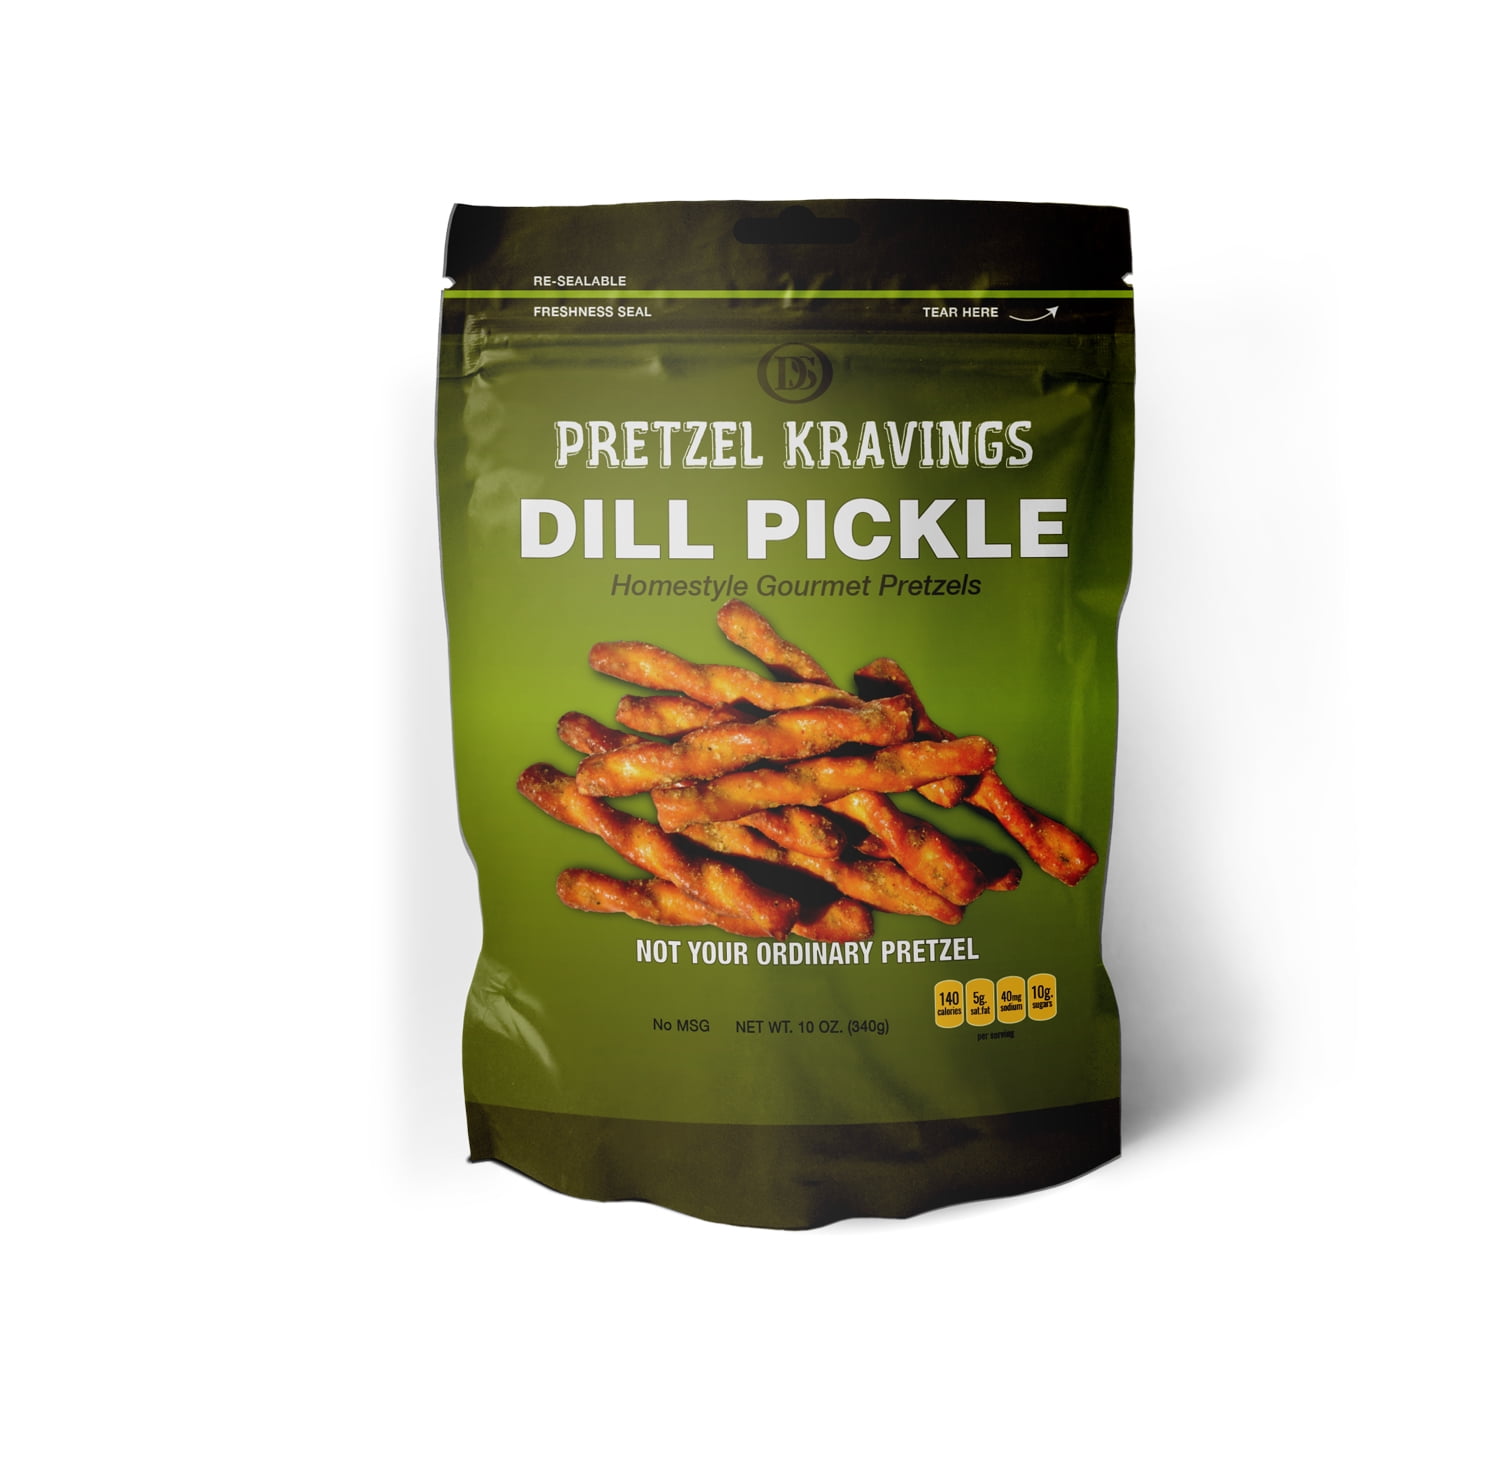 Dakota Style Pretzel Kravings Dill Pickle Pretzels, 10 Oz. - Walmart.com